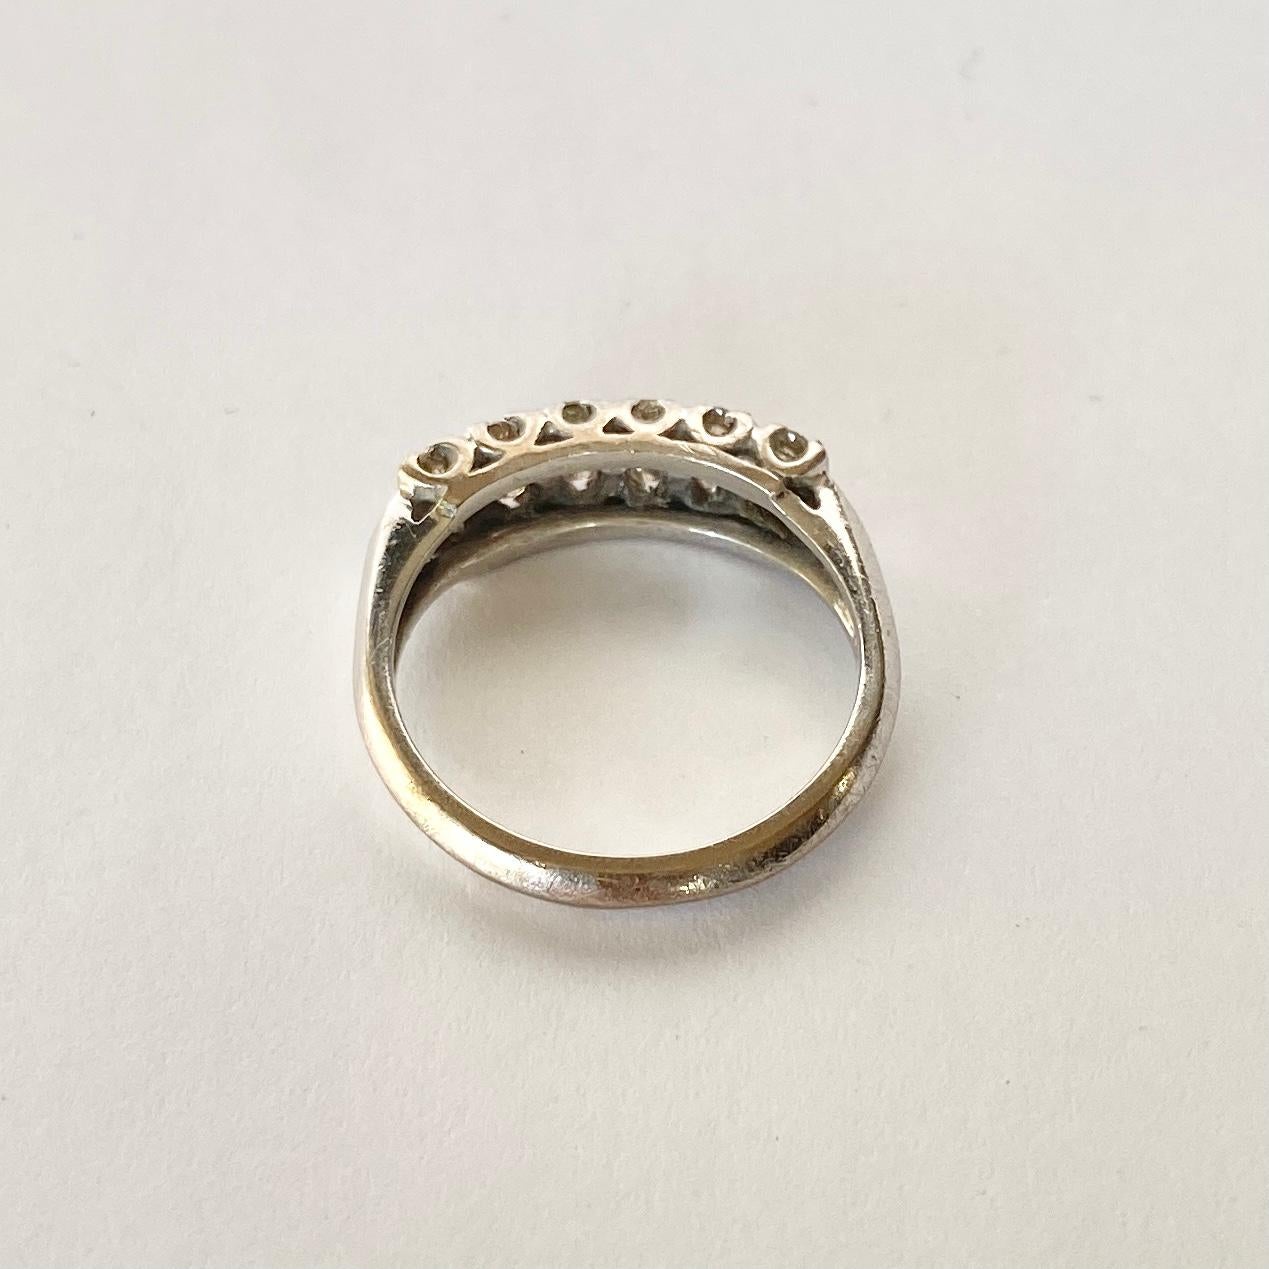 Dieses zweireihige Band für die halbe Ewigkeit enthält insgesamt 35 funkelnde Diamanten. Der Ring ist aus 18 Karat Weißgold gefertigt. 

Ring Größe: M 1/2 oder 6 1/2 
Breite des Bandes: 5,5 mm 

Gewicht: 4,2 g